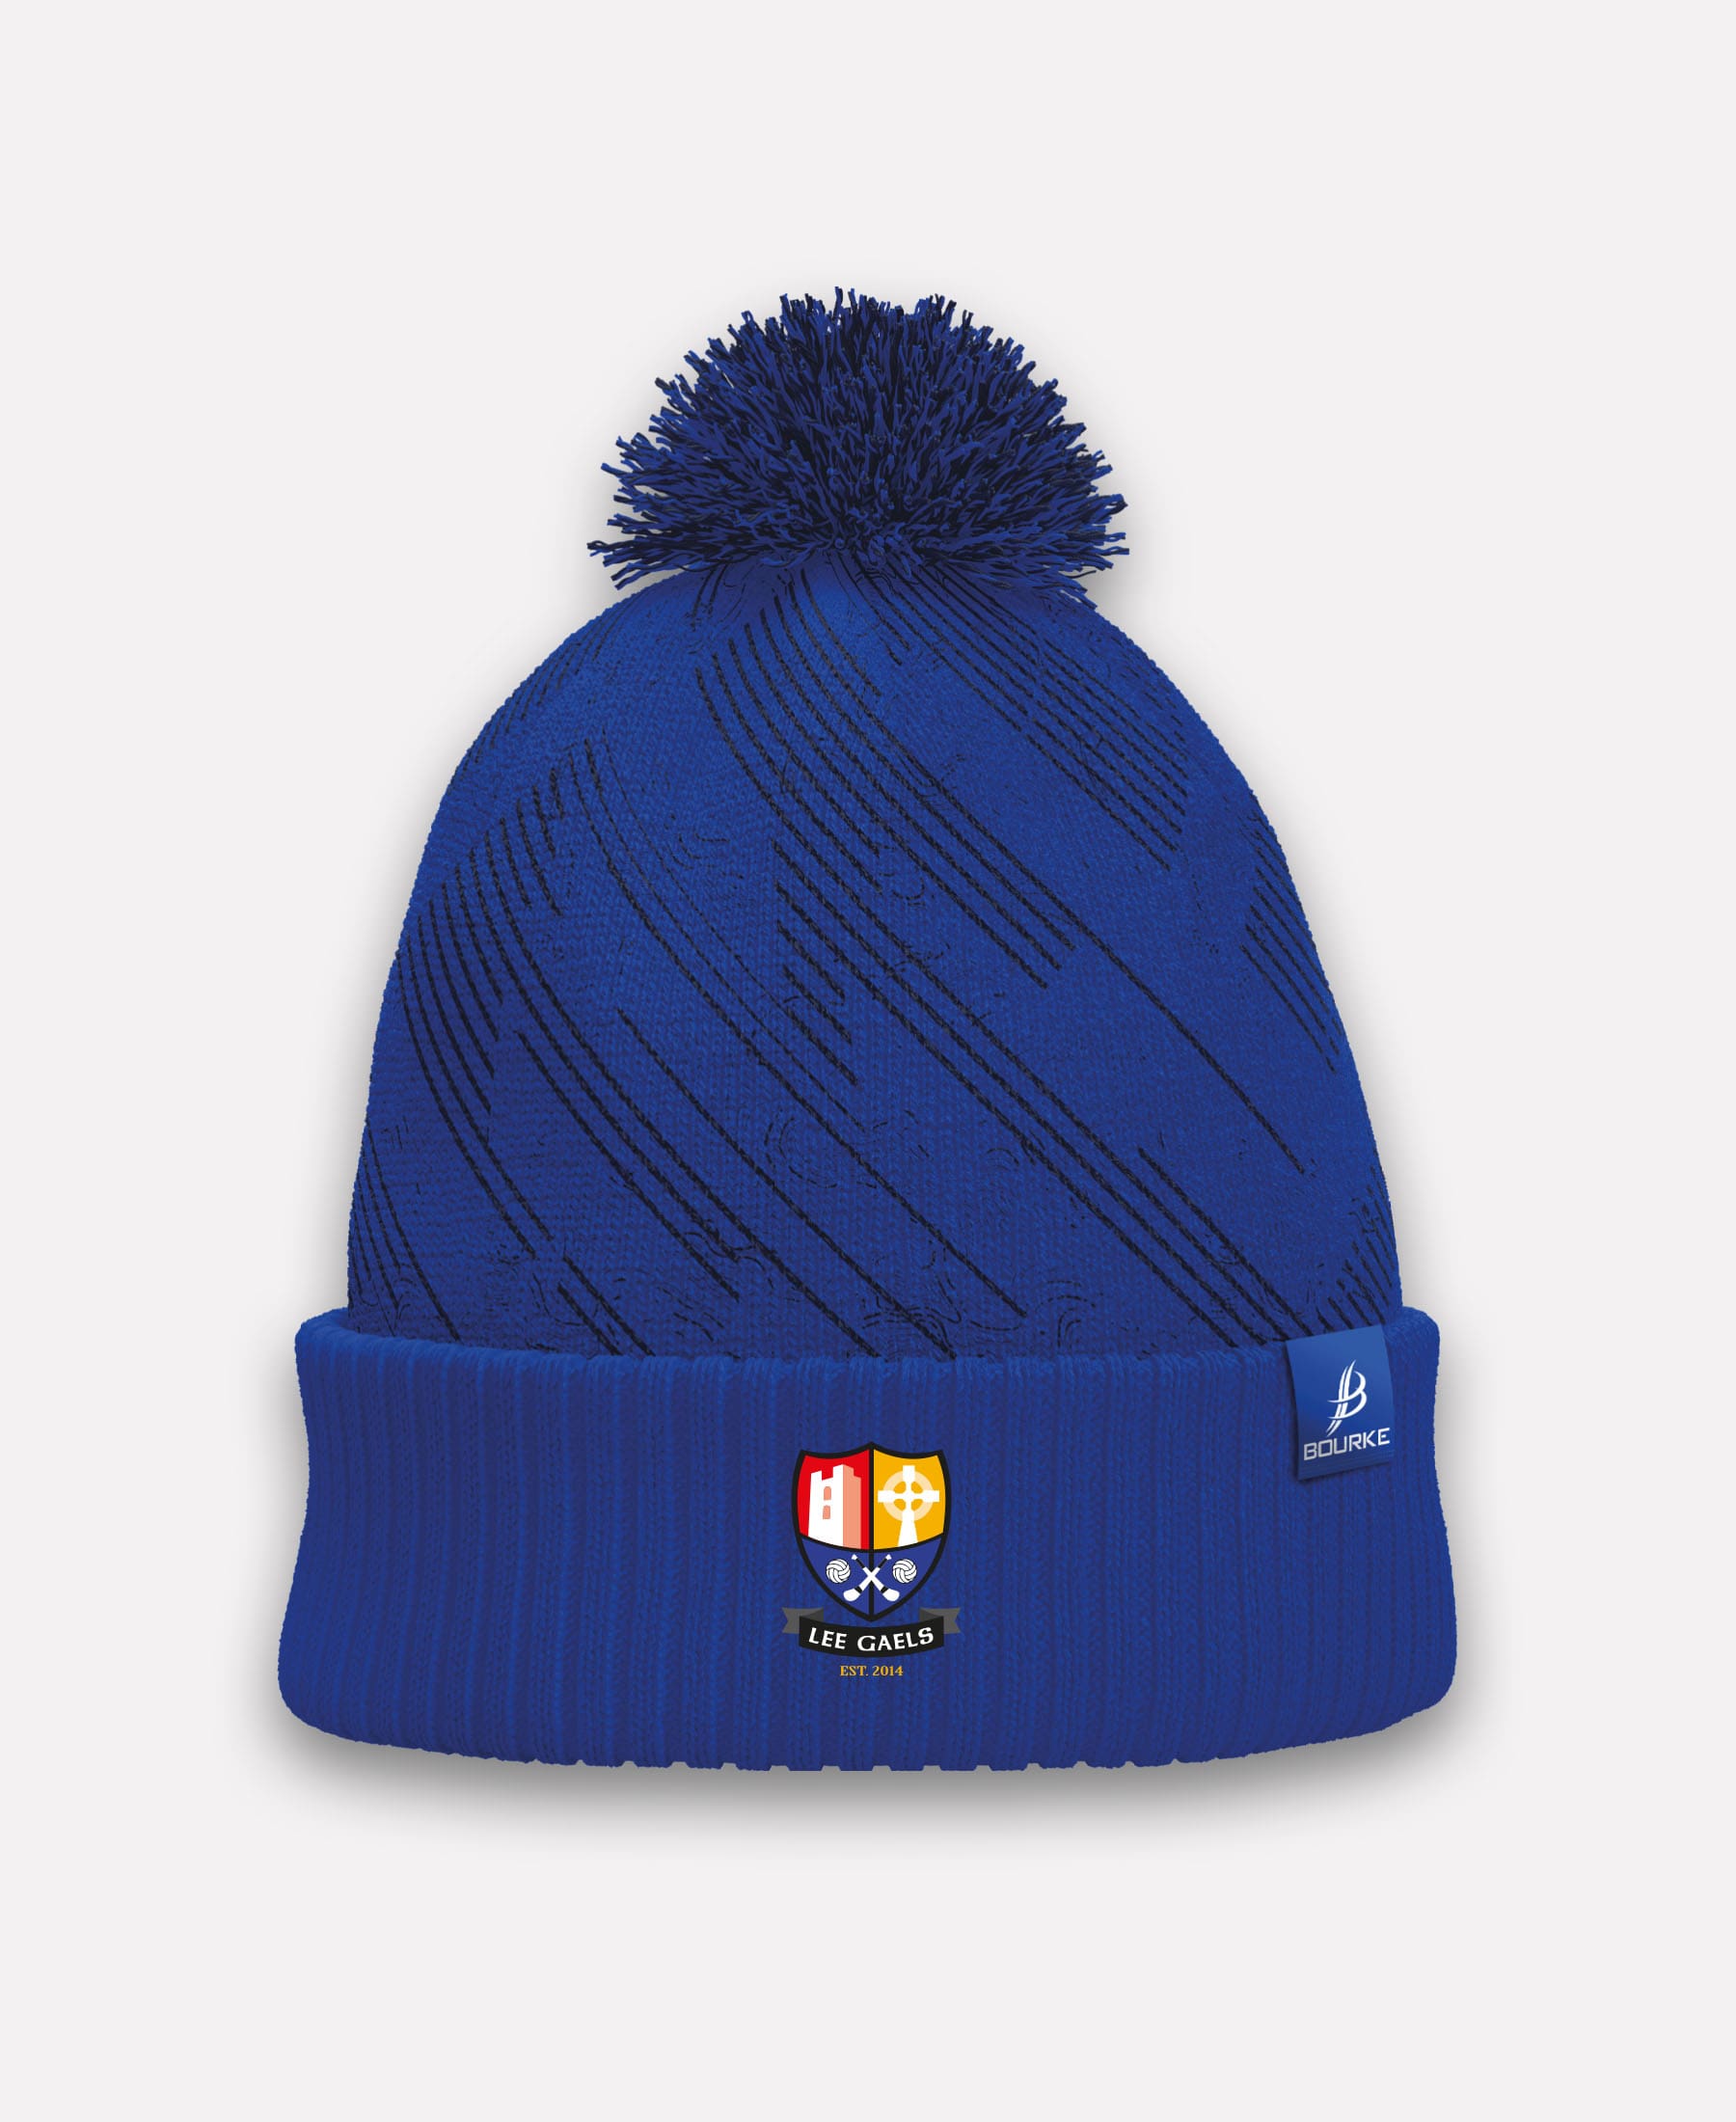 Lee Gaels GAA BARR Bobble Hat (Navy/blue)